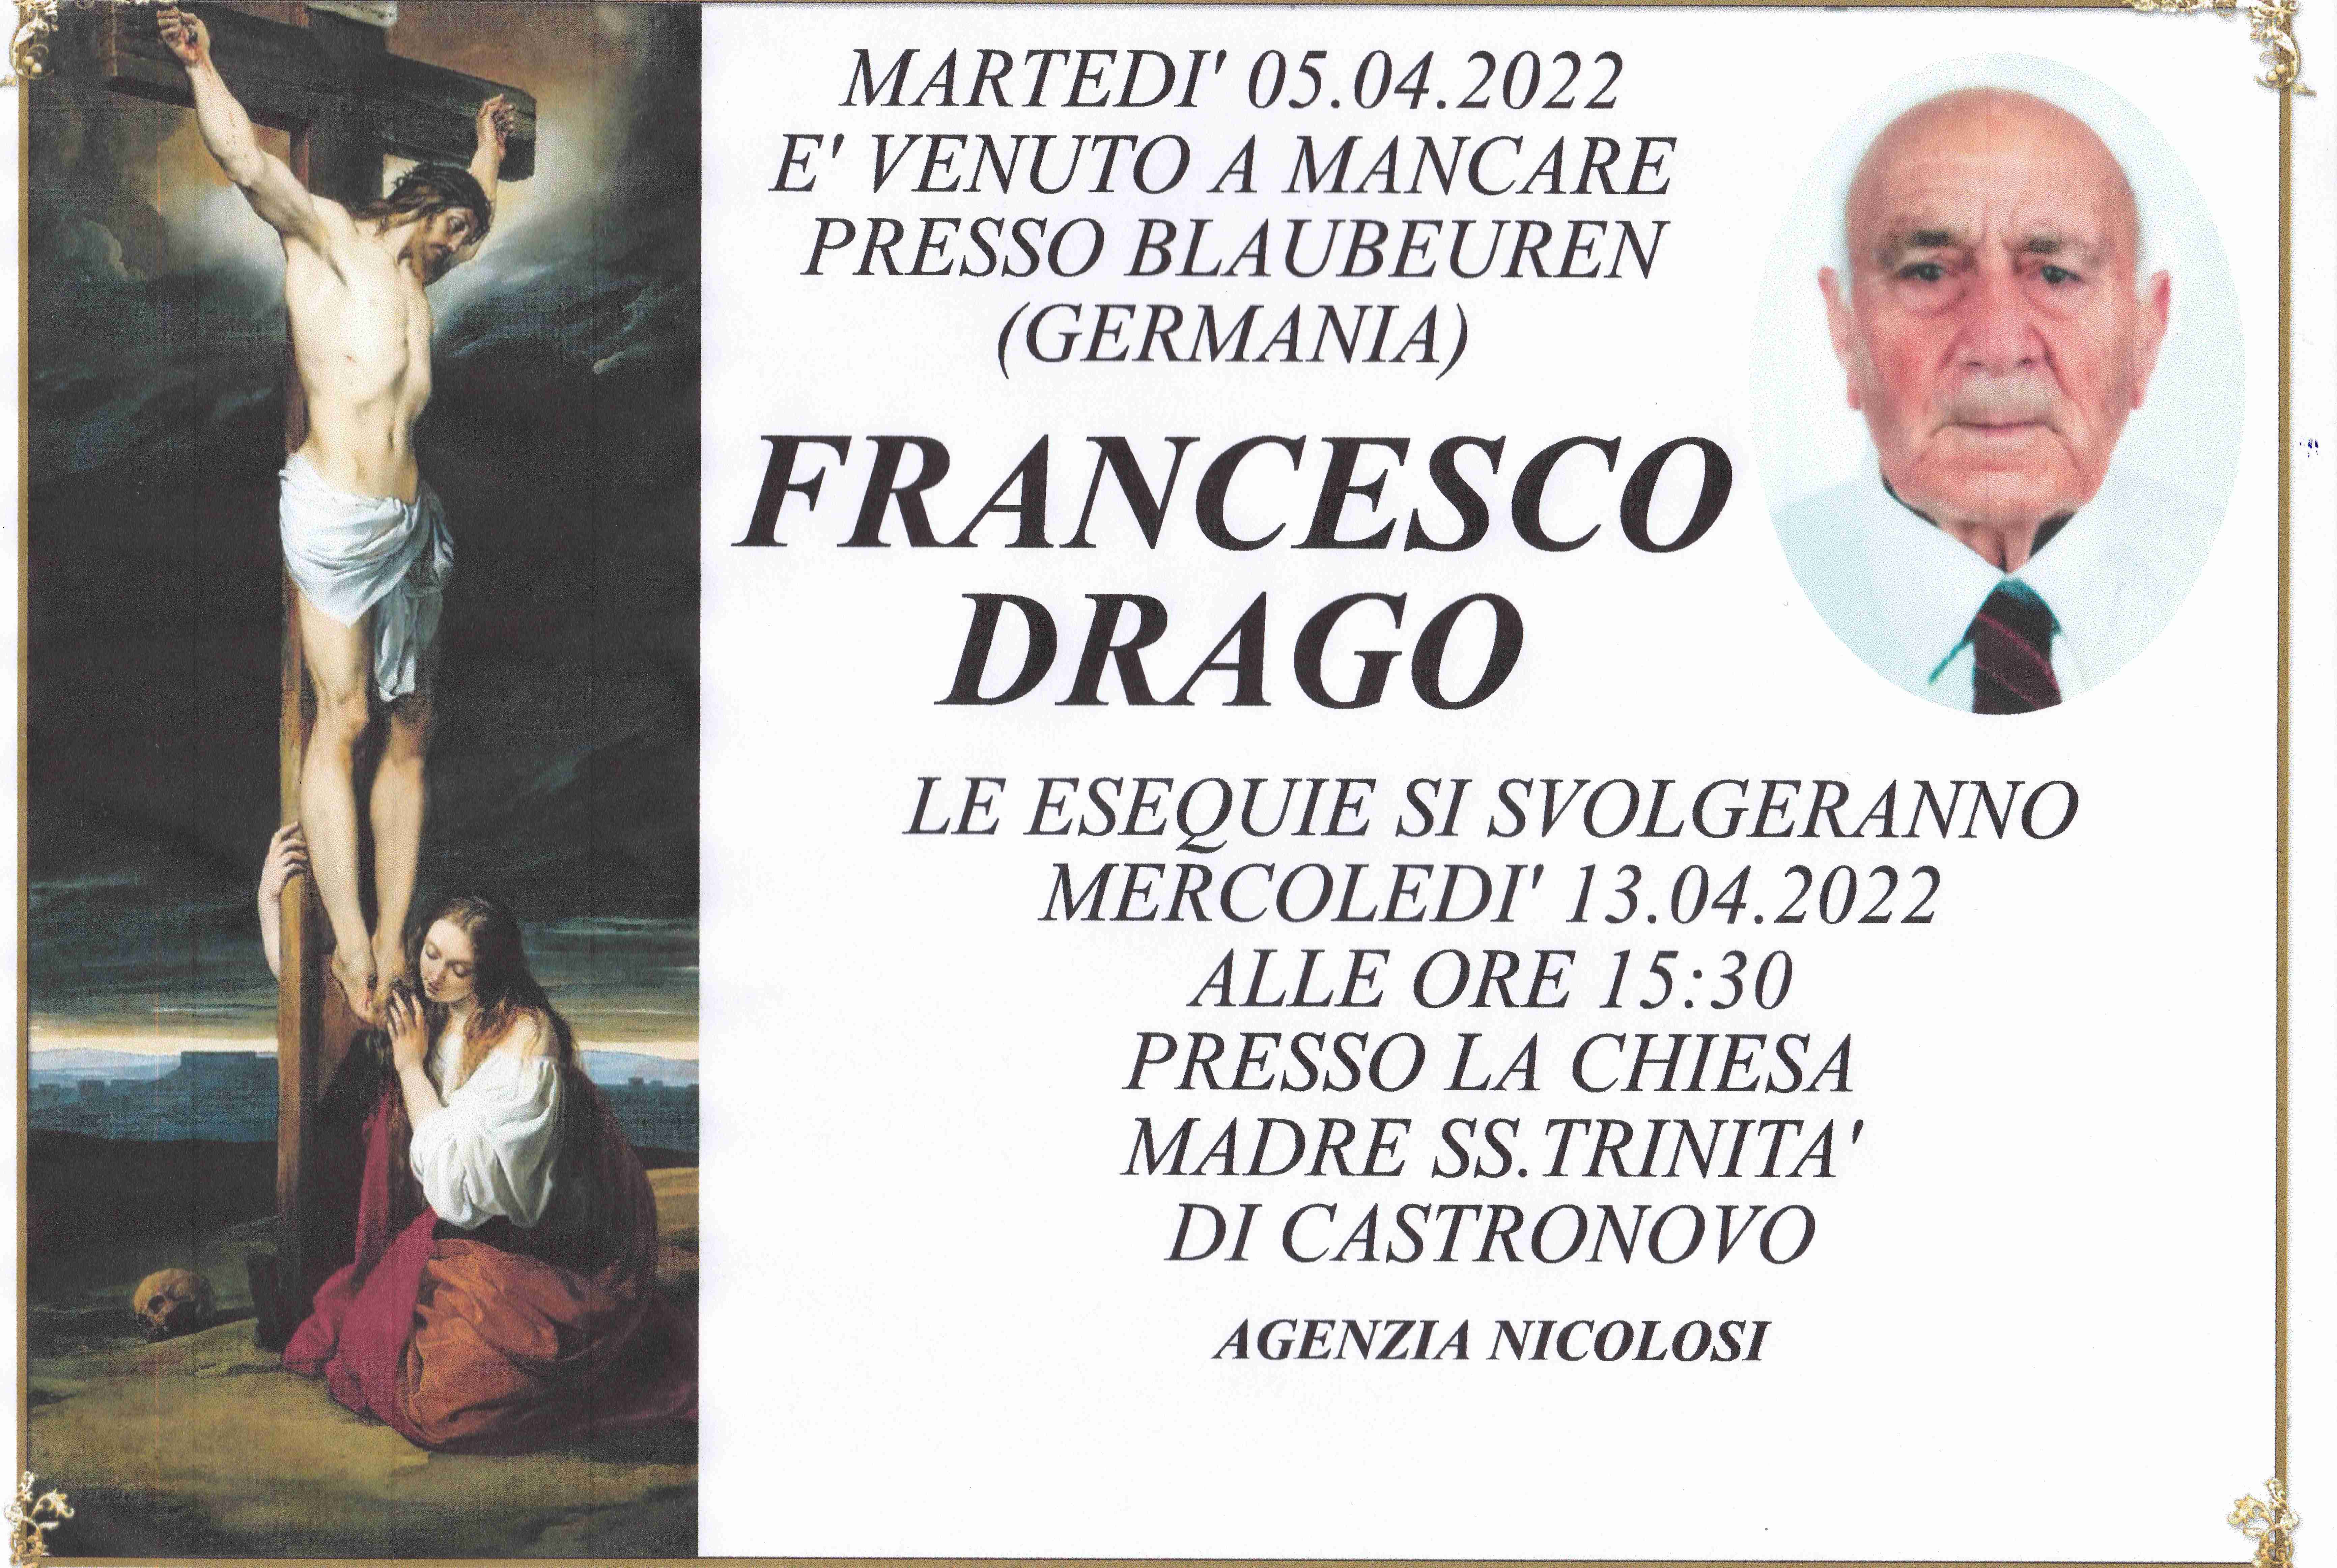 Francesco Drago